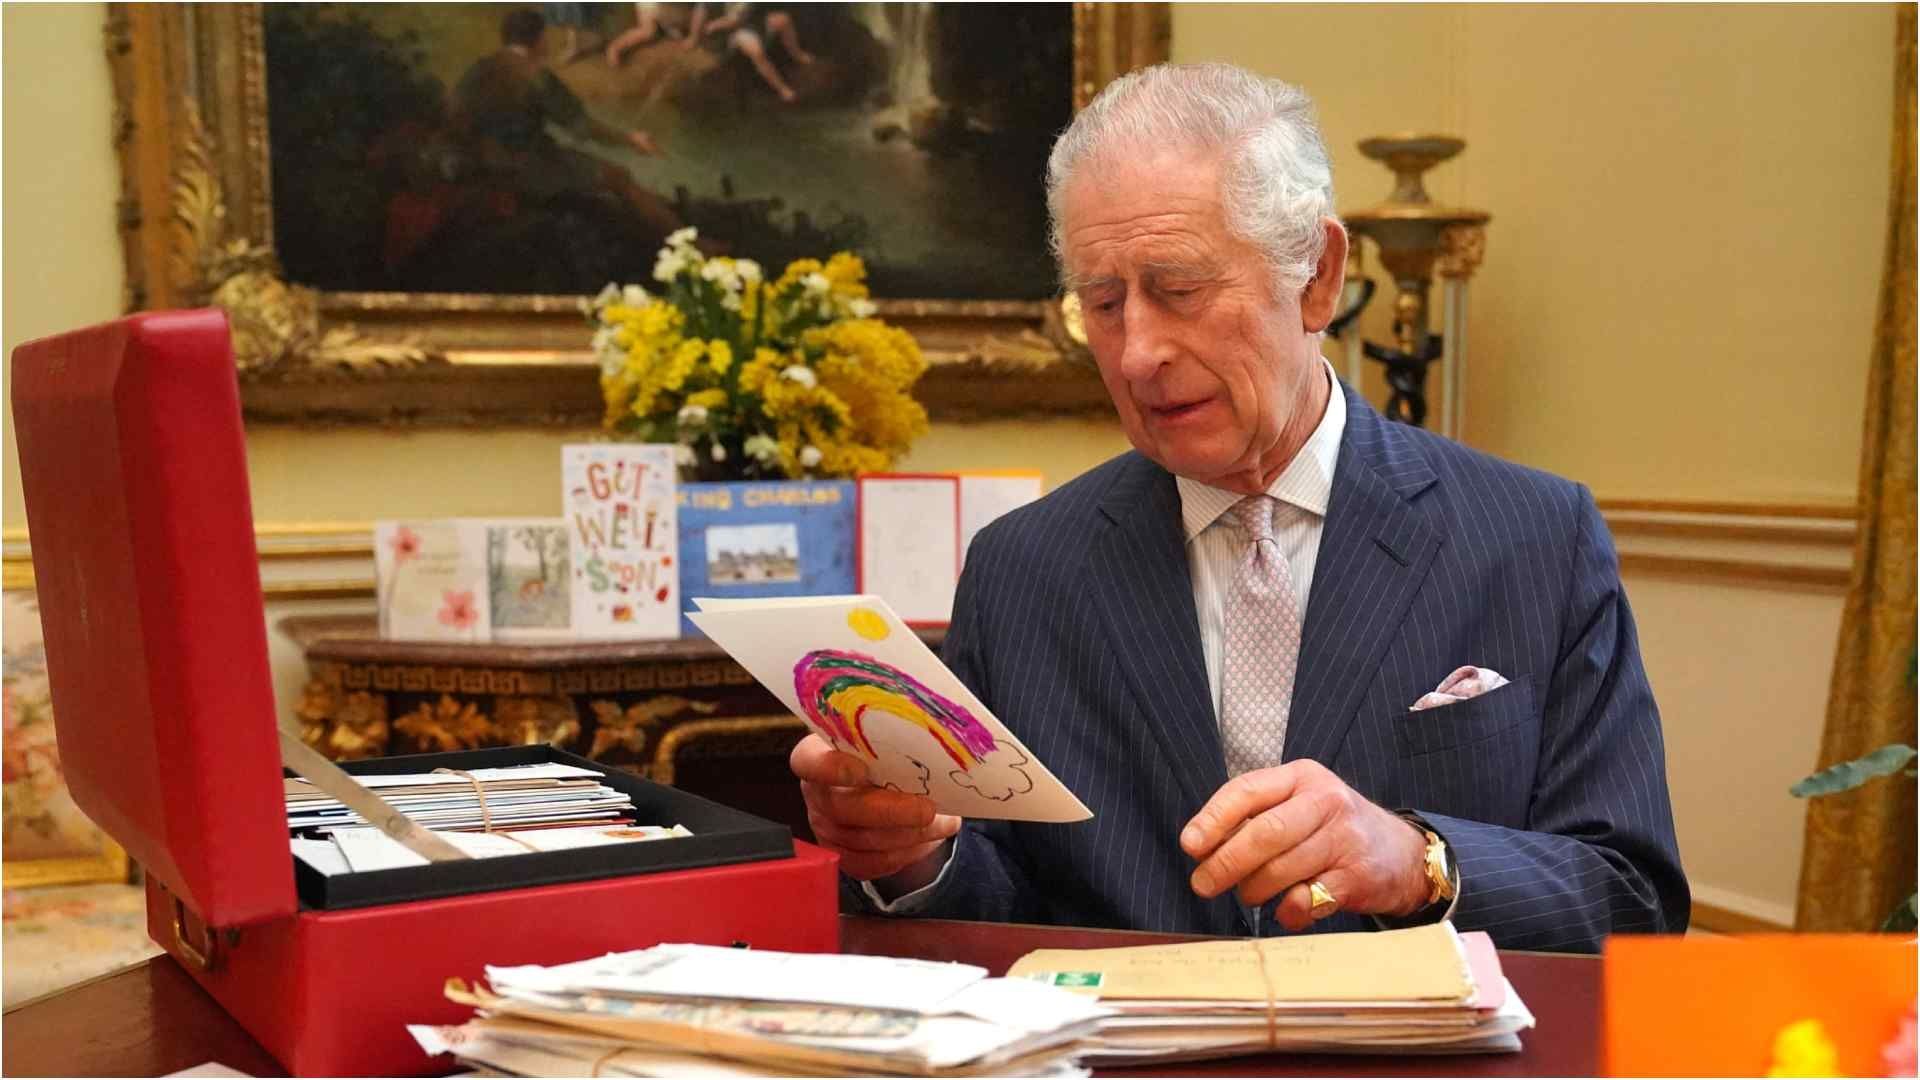 Rey Carlos III agradece miles de cartas tras diagnóstico de cáncer